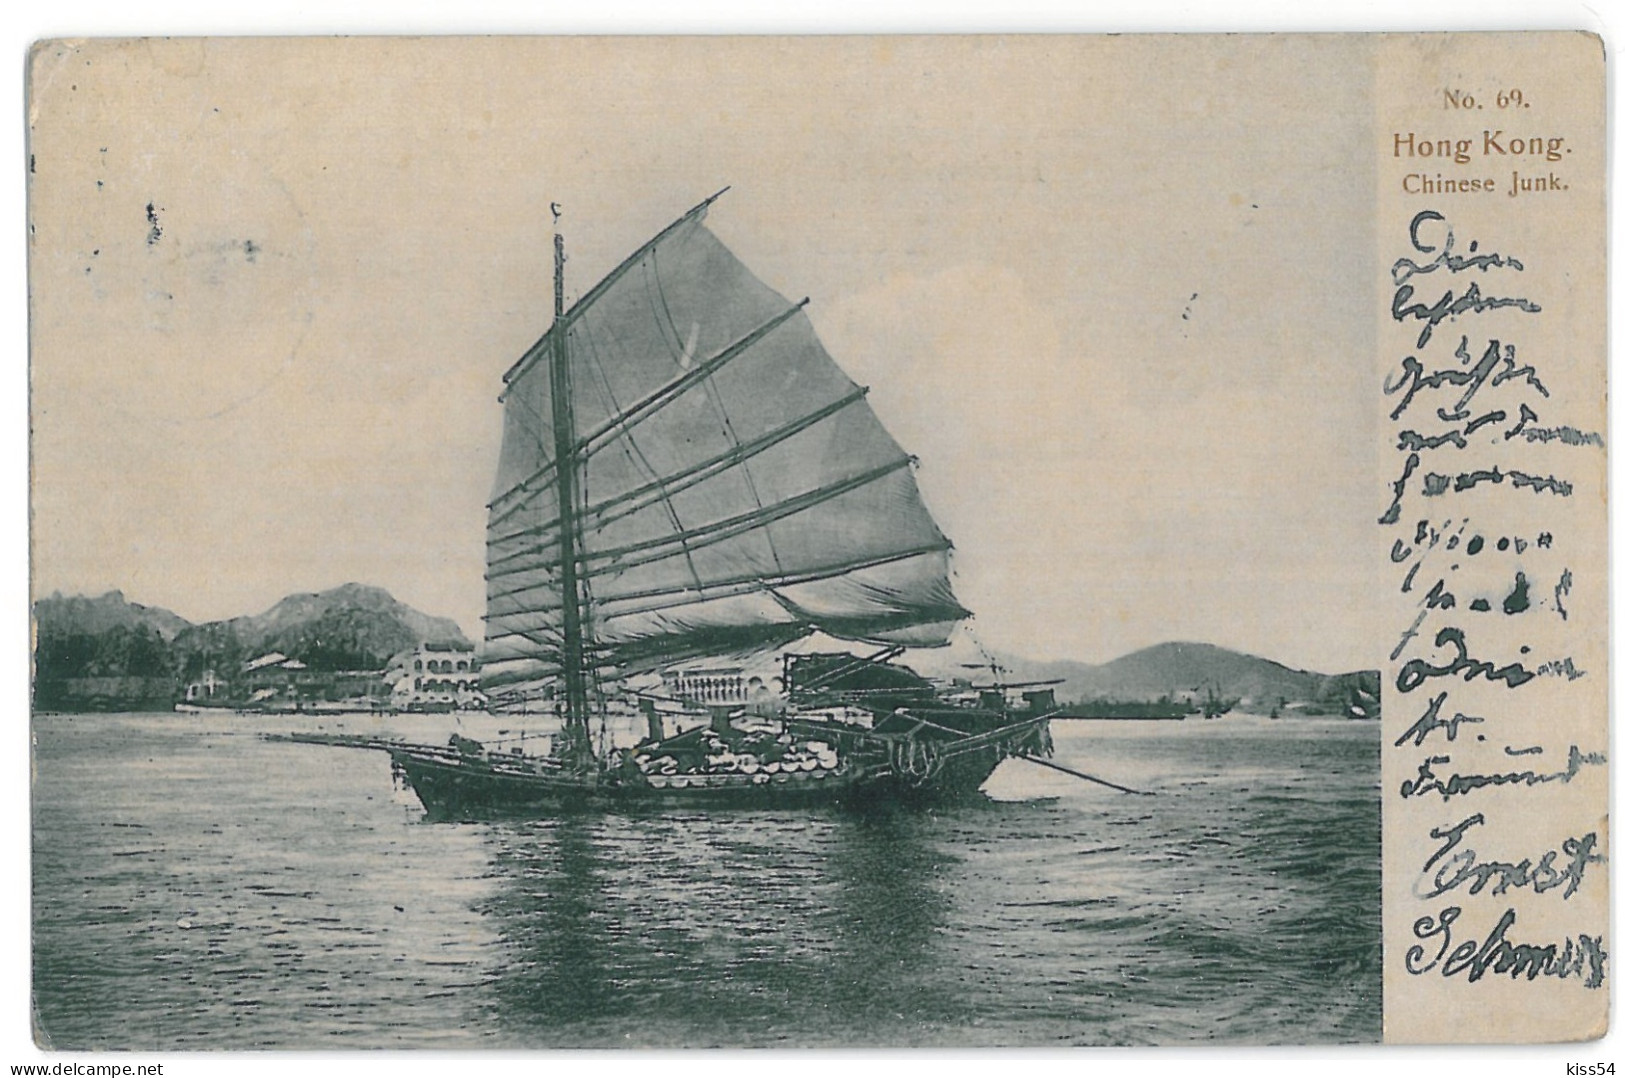 CH 51 - 13018 HONG KONG, Boat, China - Old Postcard - Used - Chine (Hong Kong)